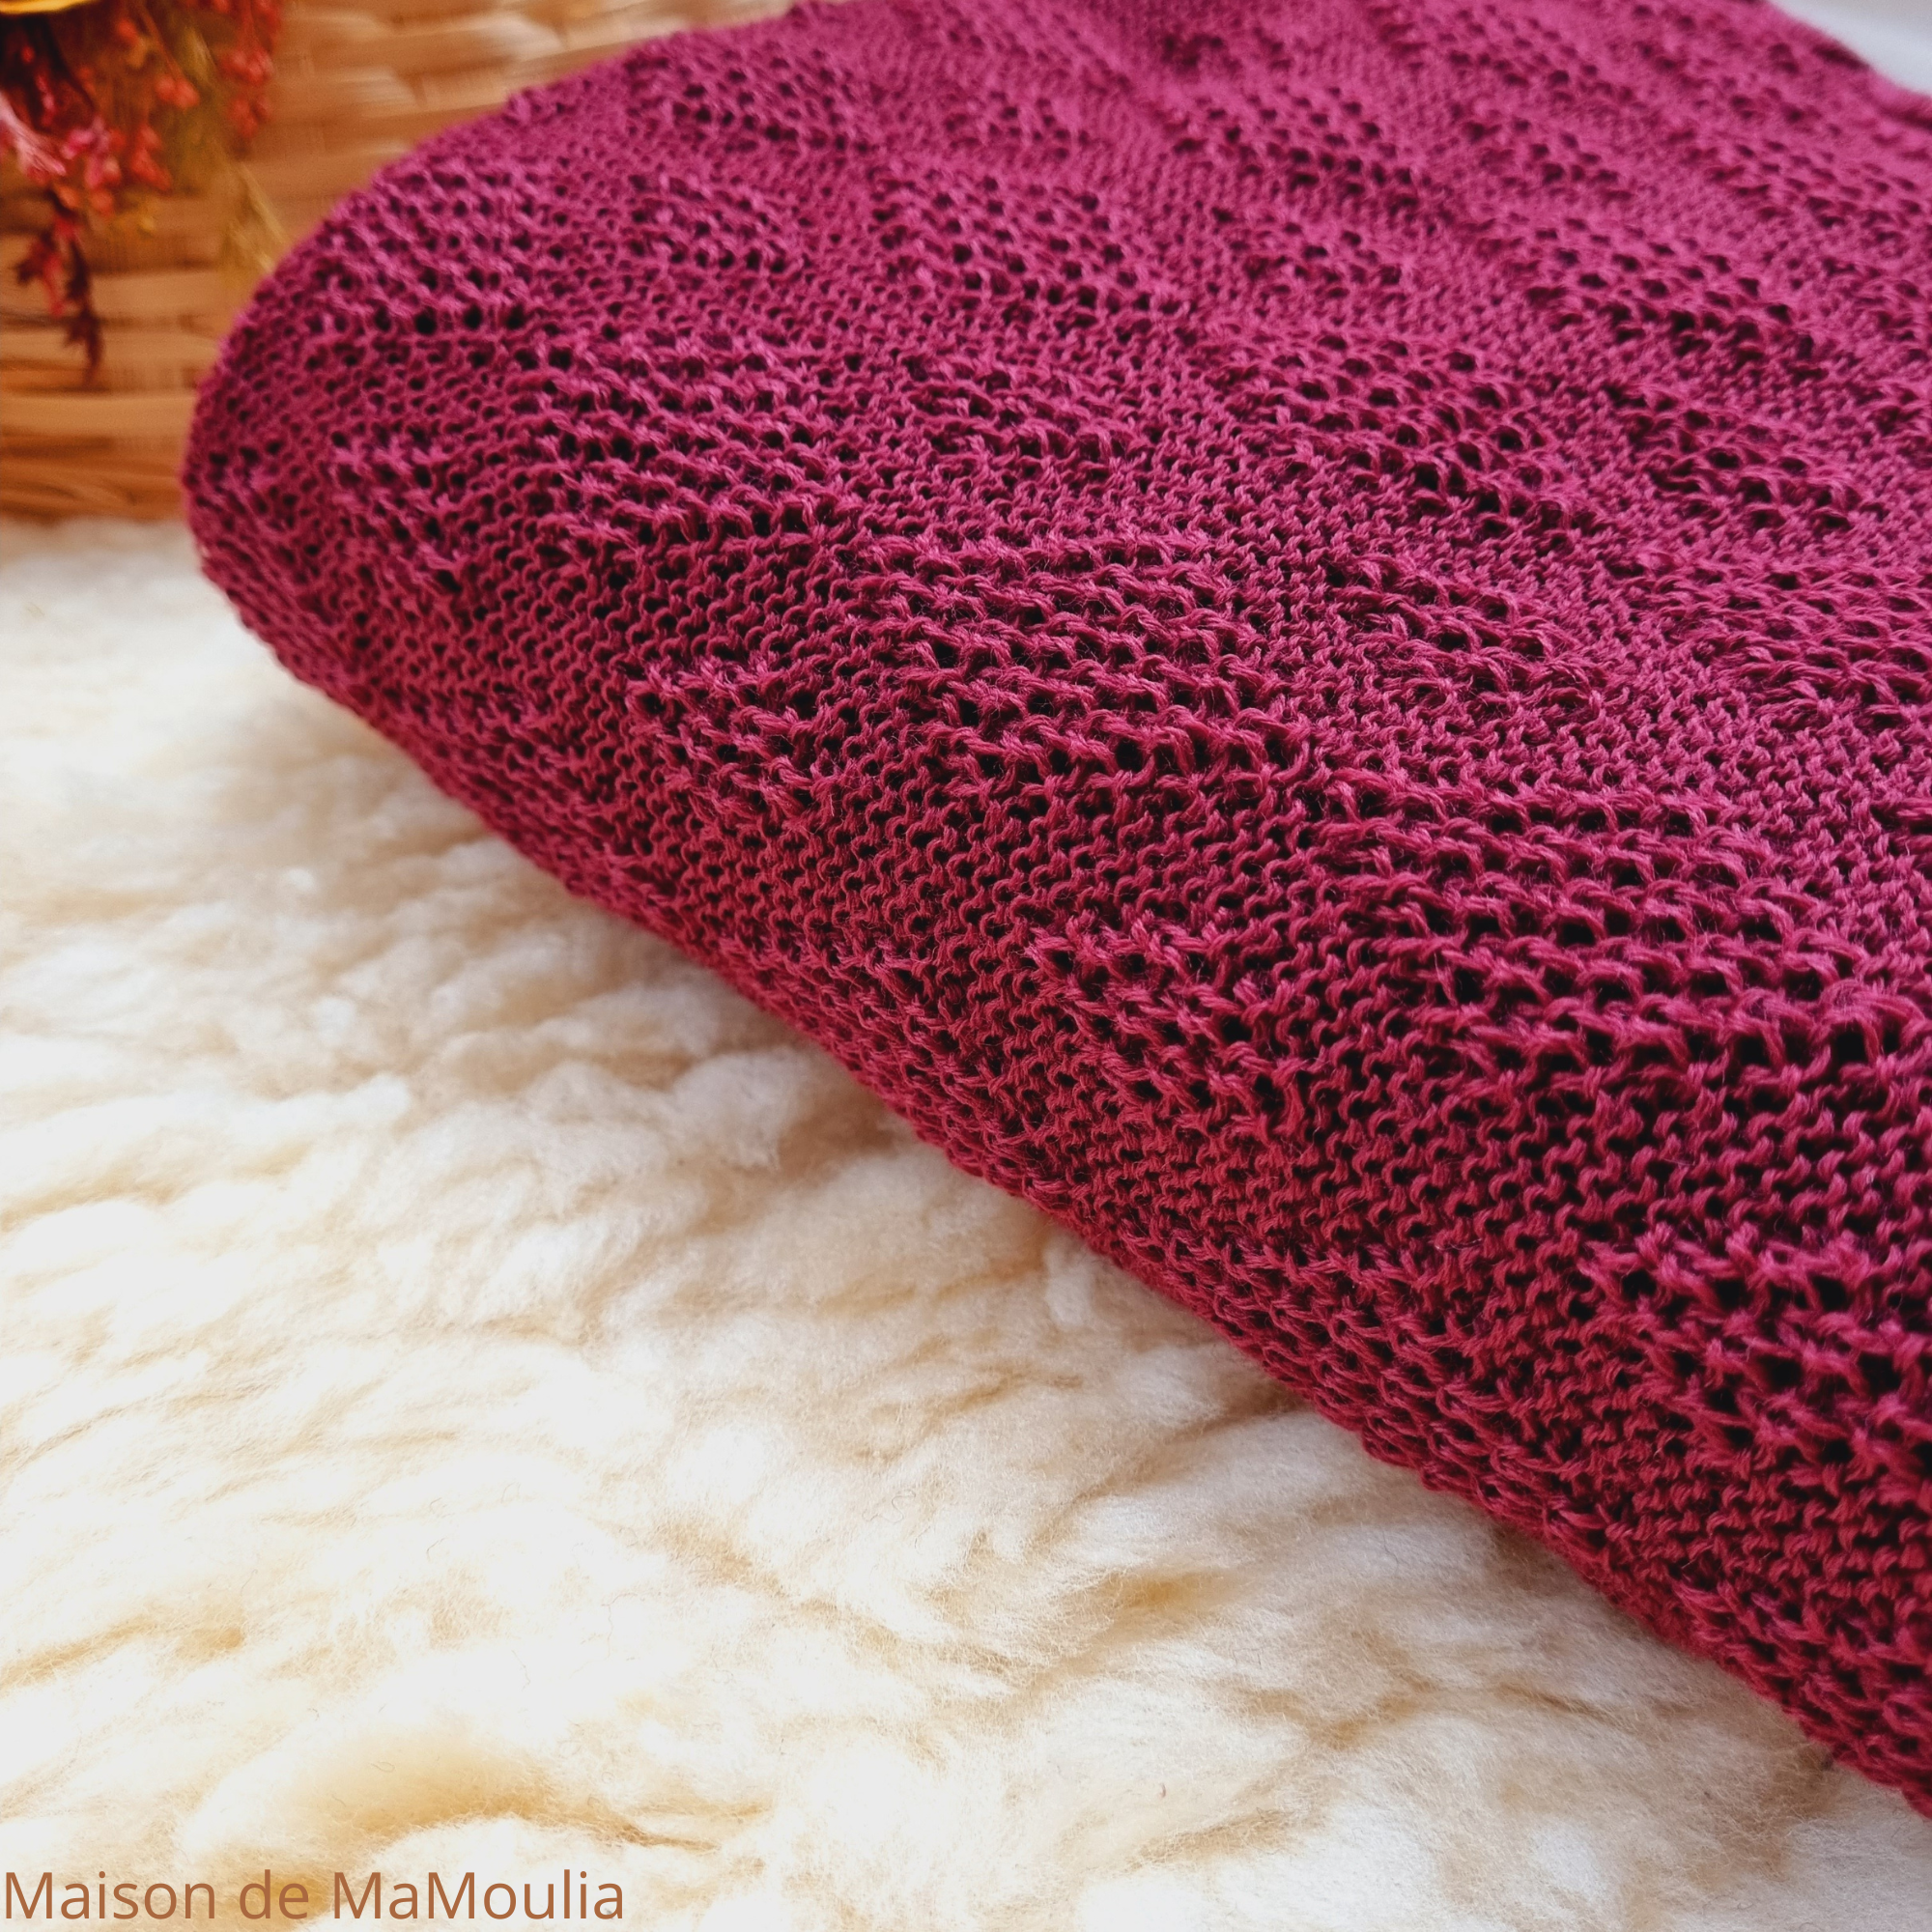 Couverture laine Disana tricotée - honeycomb - Alpes du Sud Mérinos